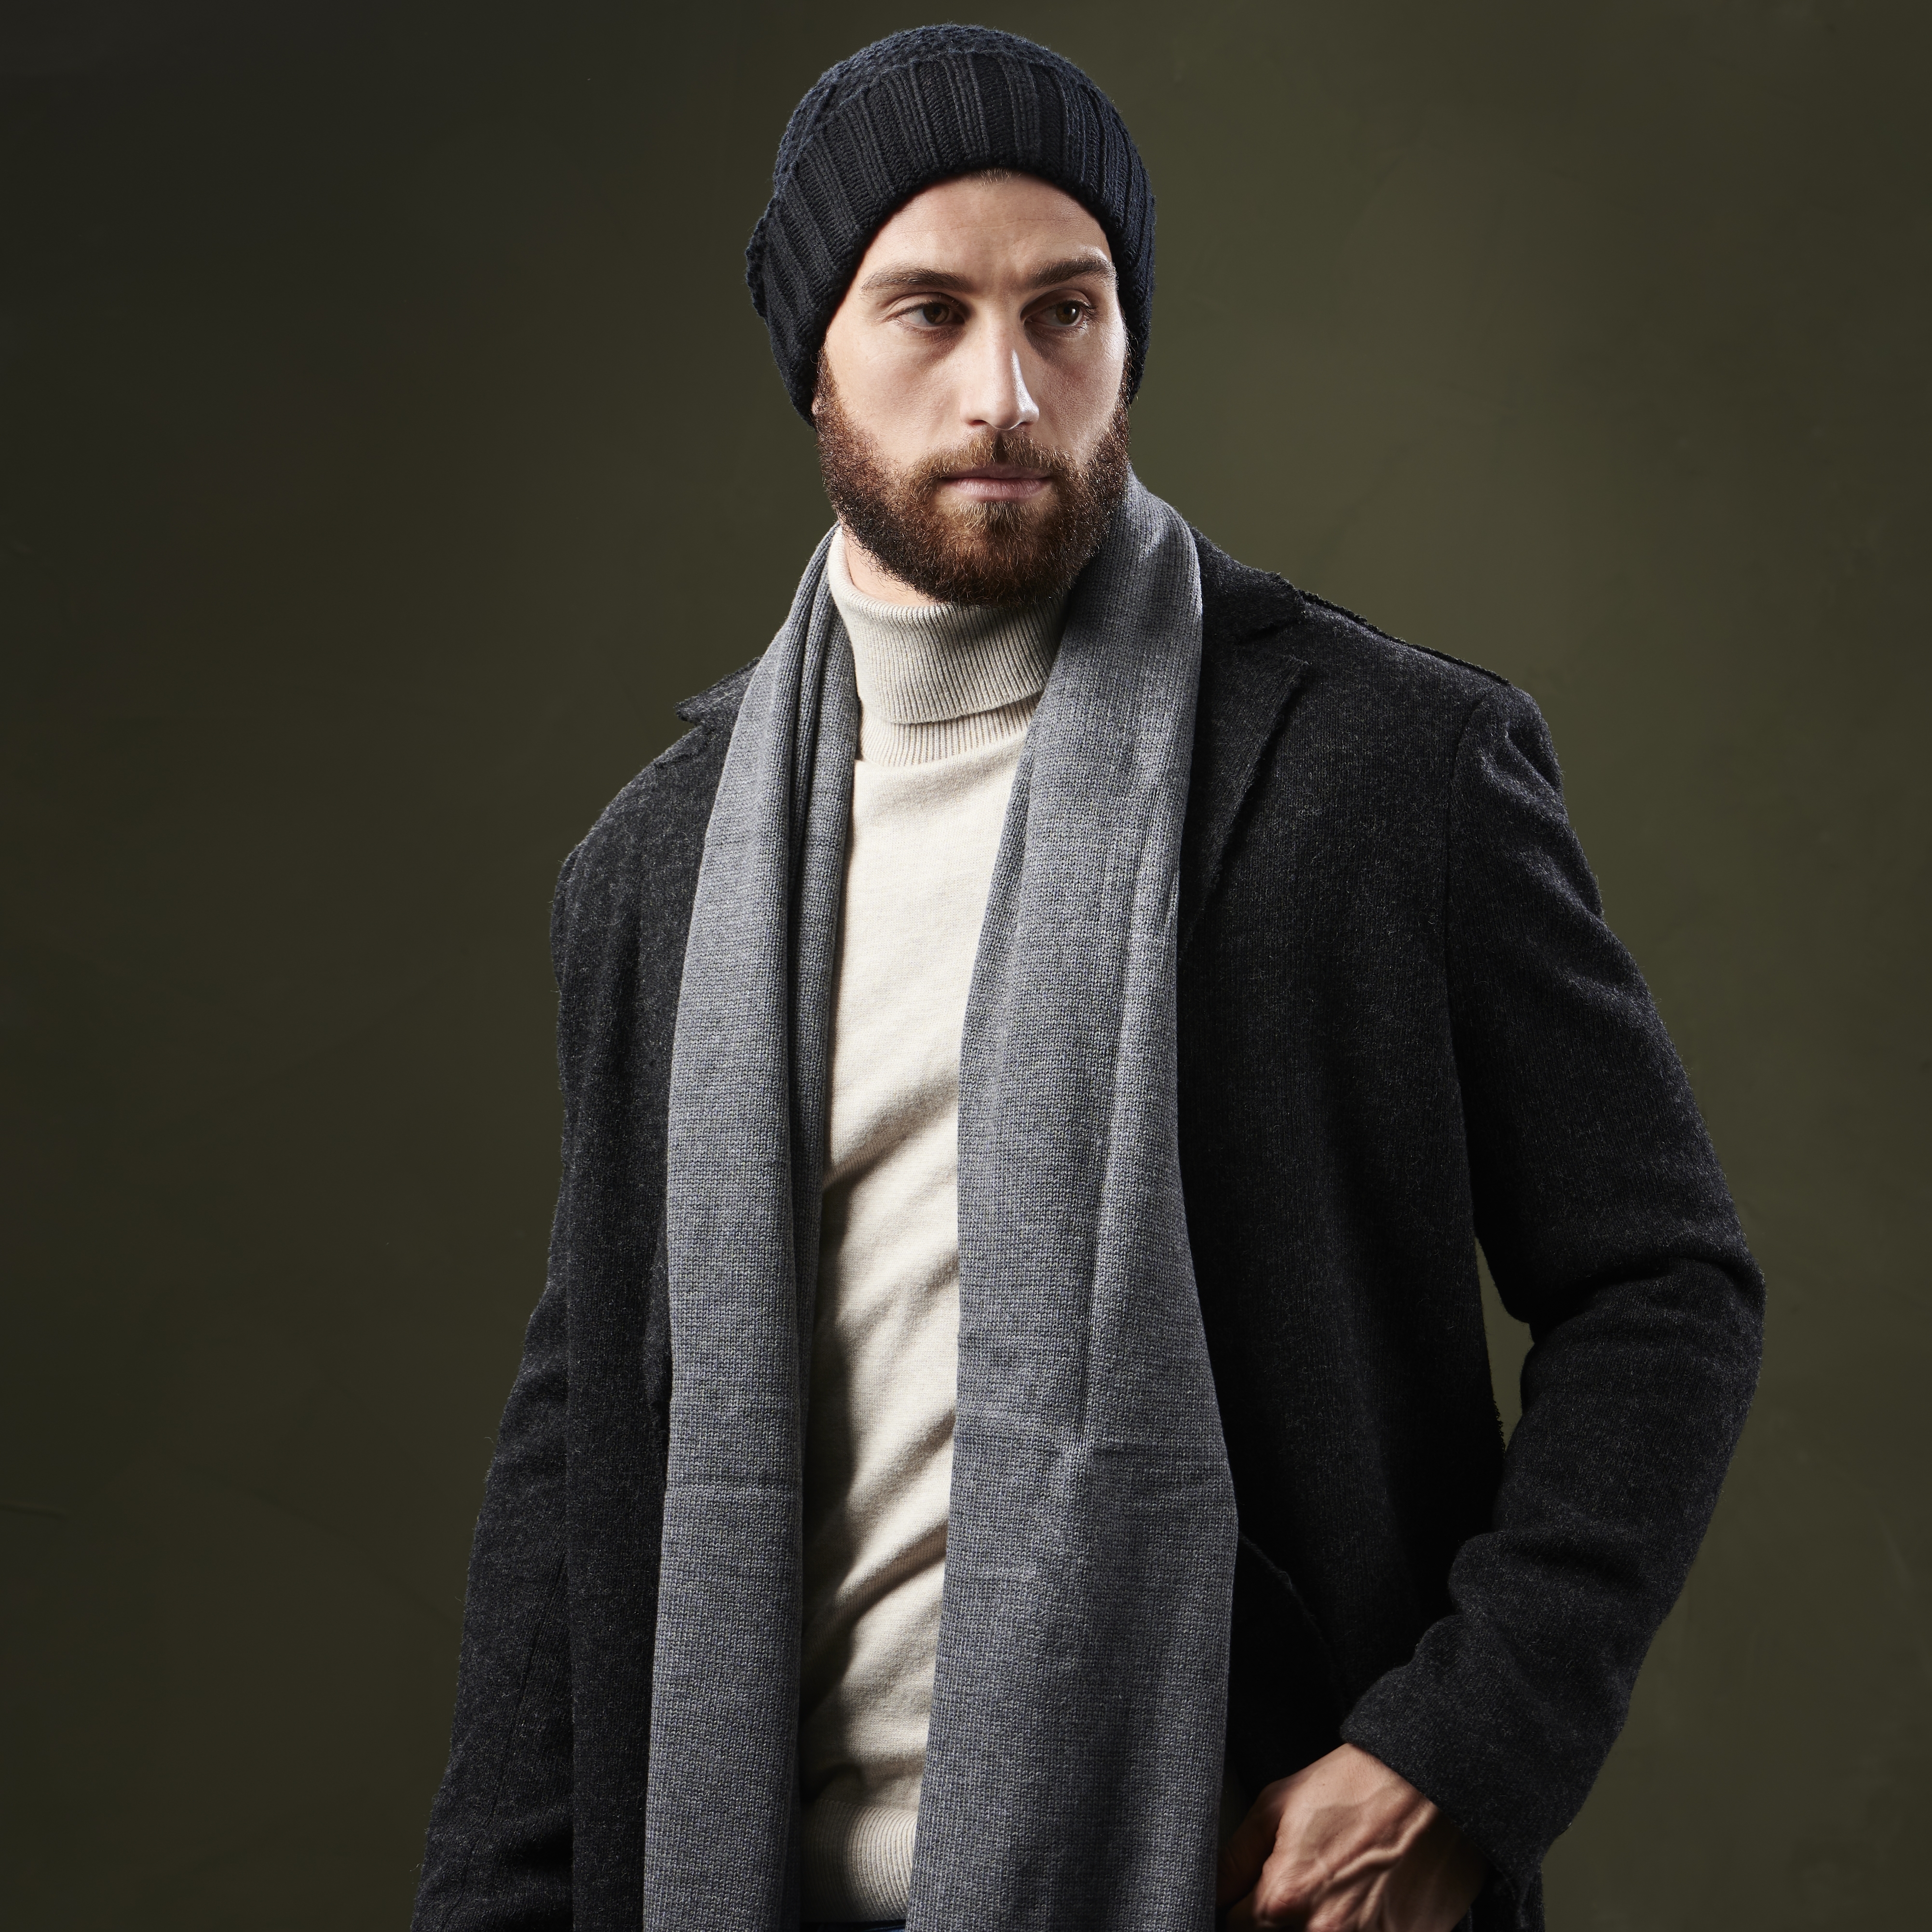 Guía rápida de uso y disfrute del gorro de lana: así lo llevan los hombres  mejor vestidos en 2019